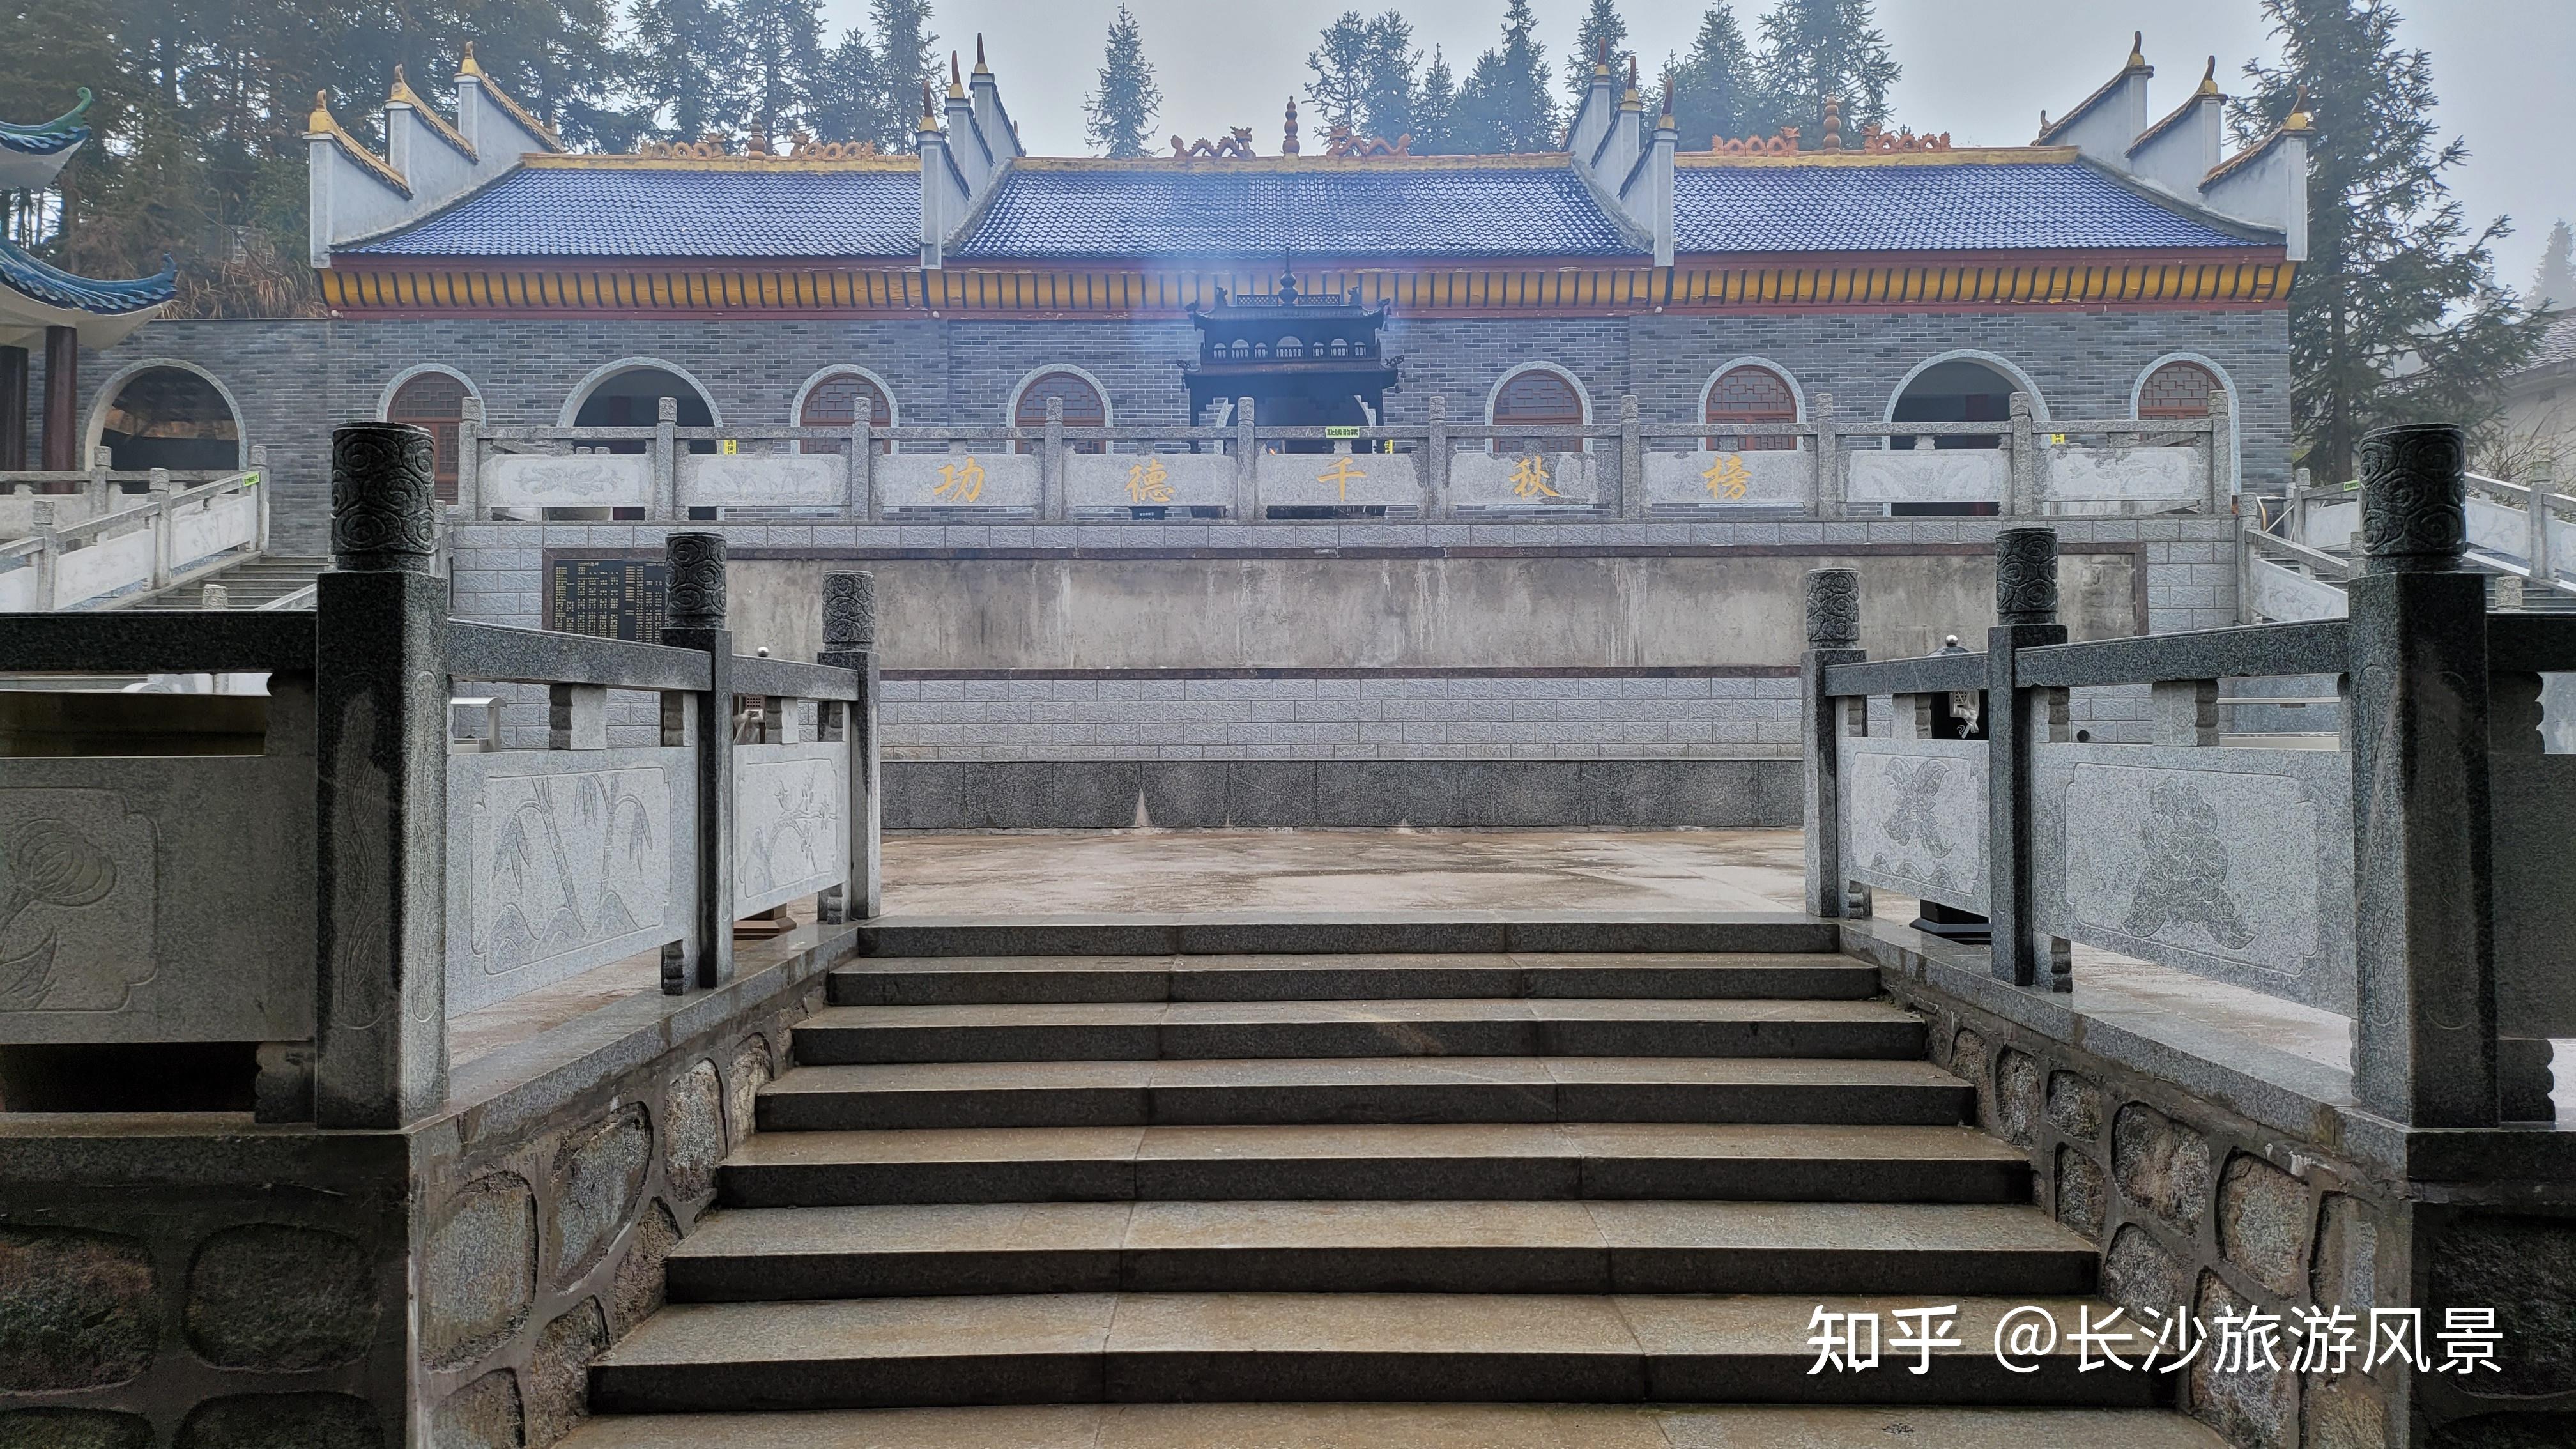 长沙市长沙县紫云宫,隐藏是农村的寺庙道观,竟然这么美